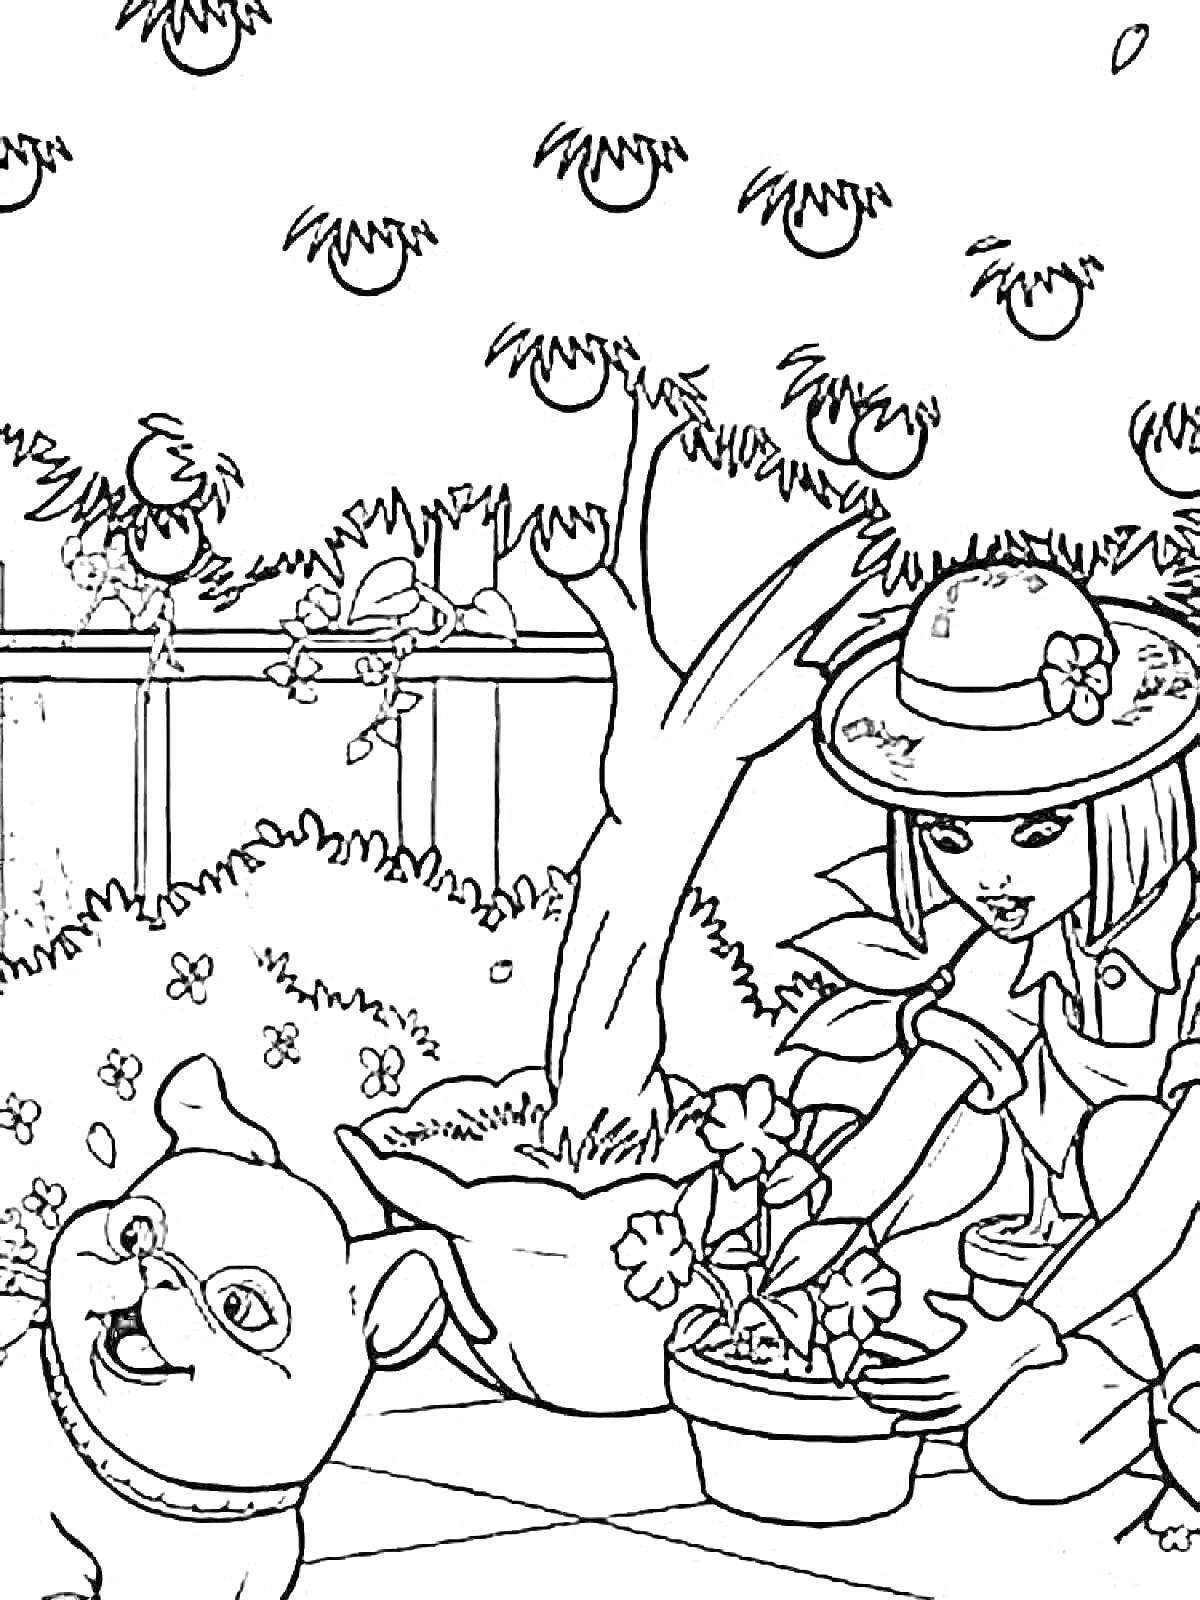 Раскраска Девочка с собачкой в саду, деревья с яблоками, забор, цветы и кусты